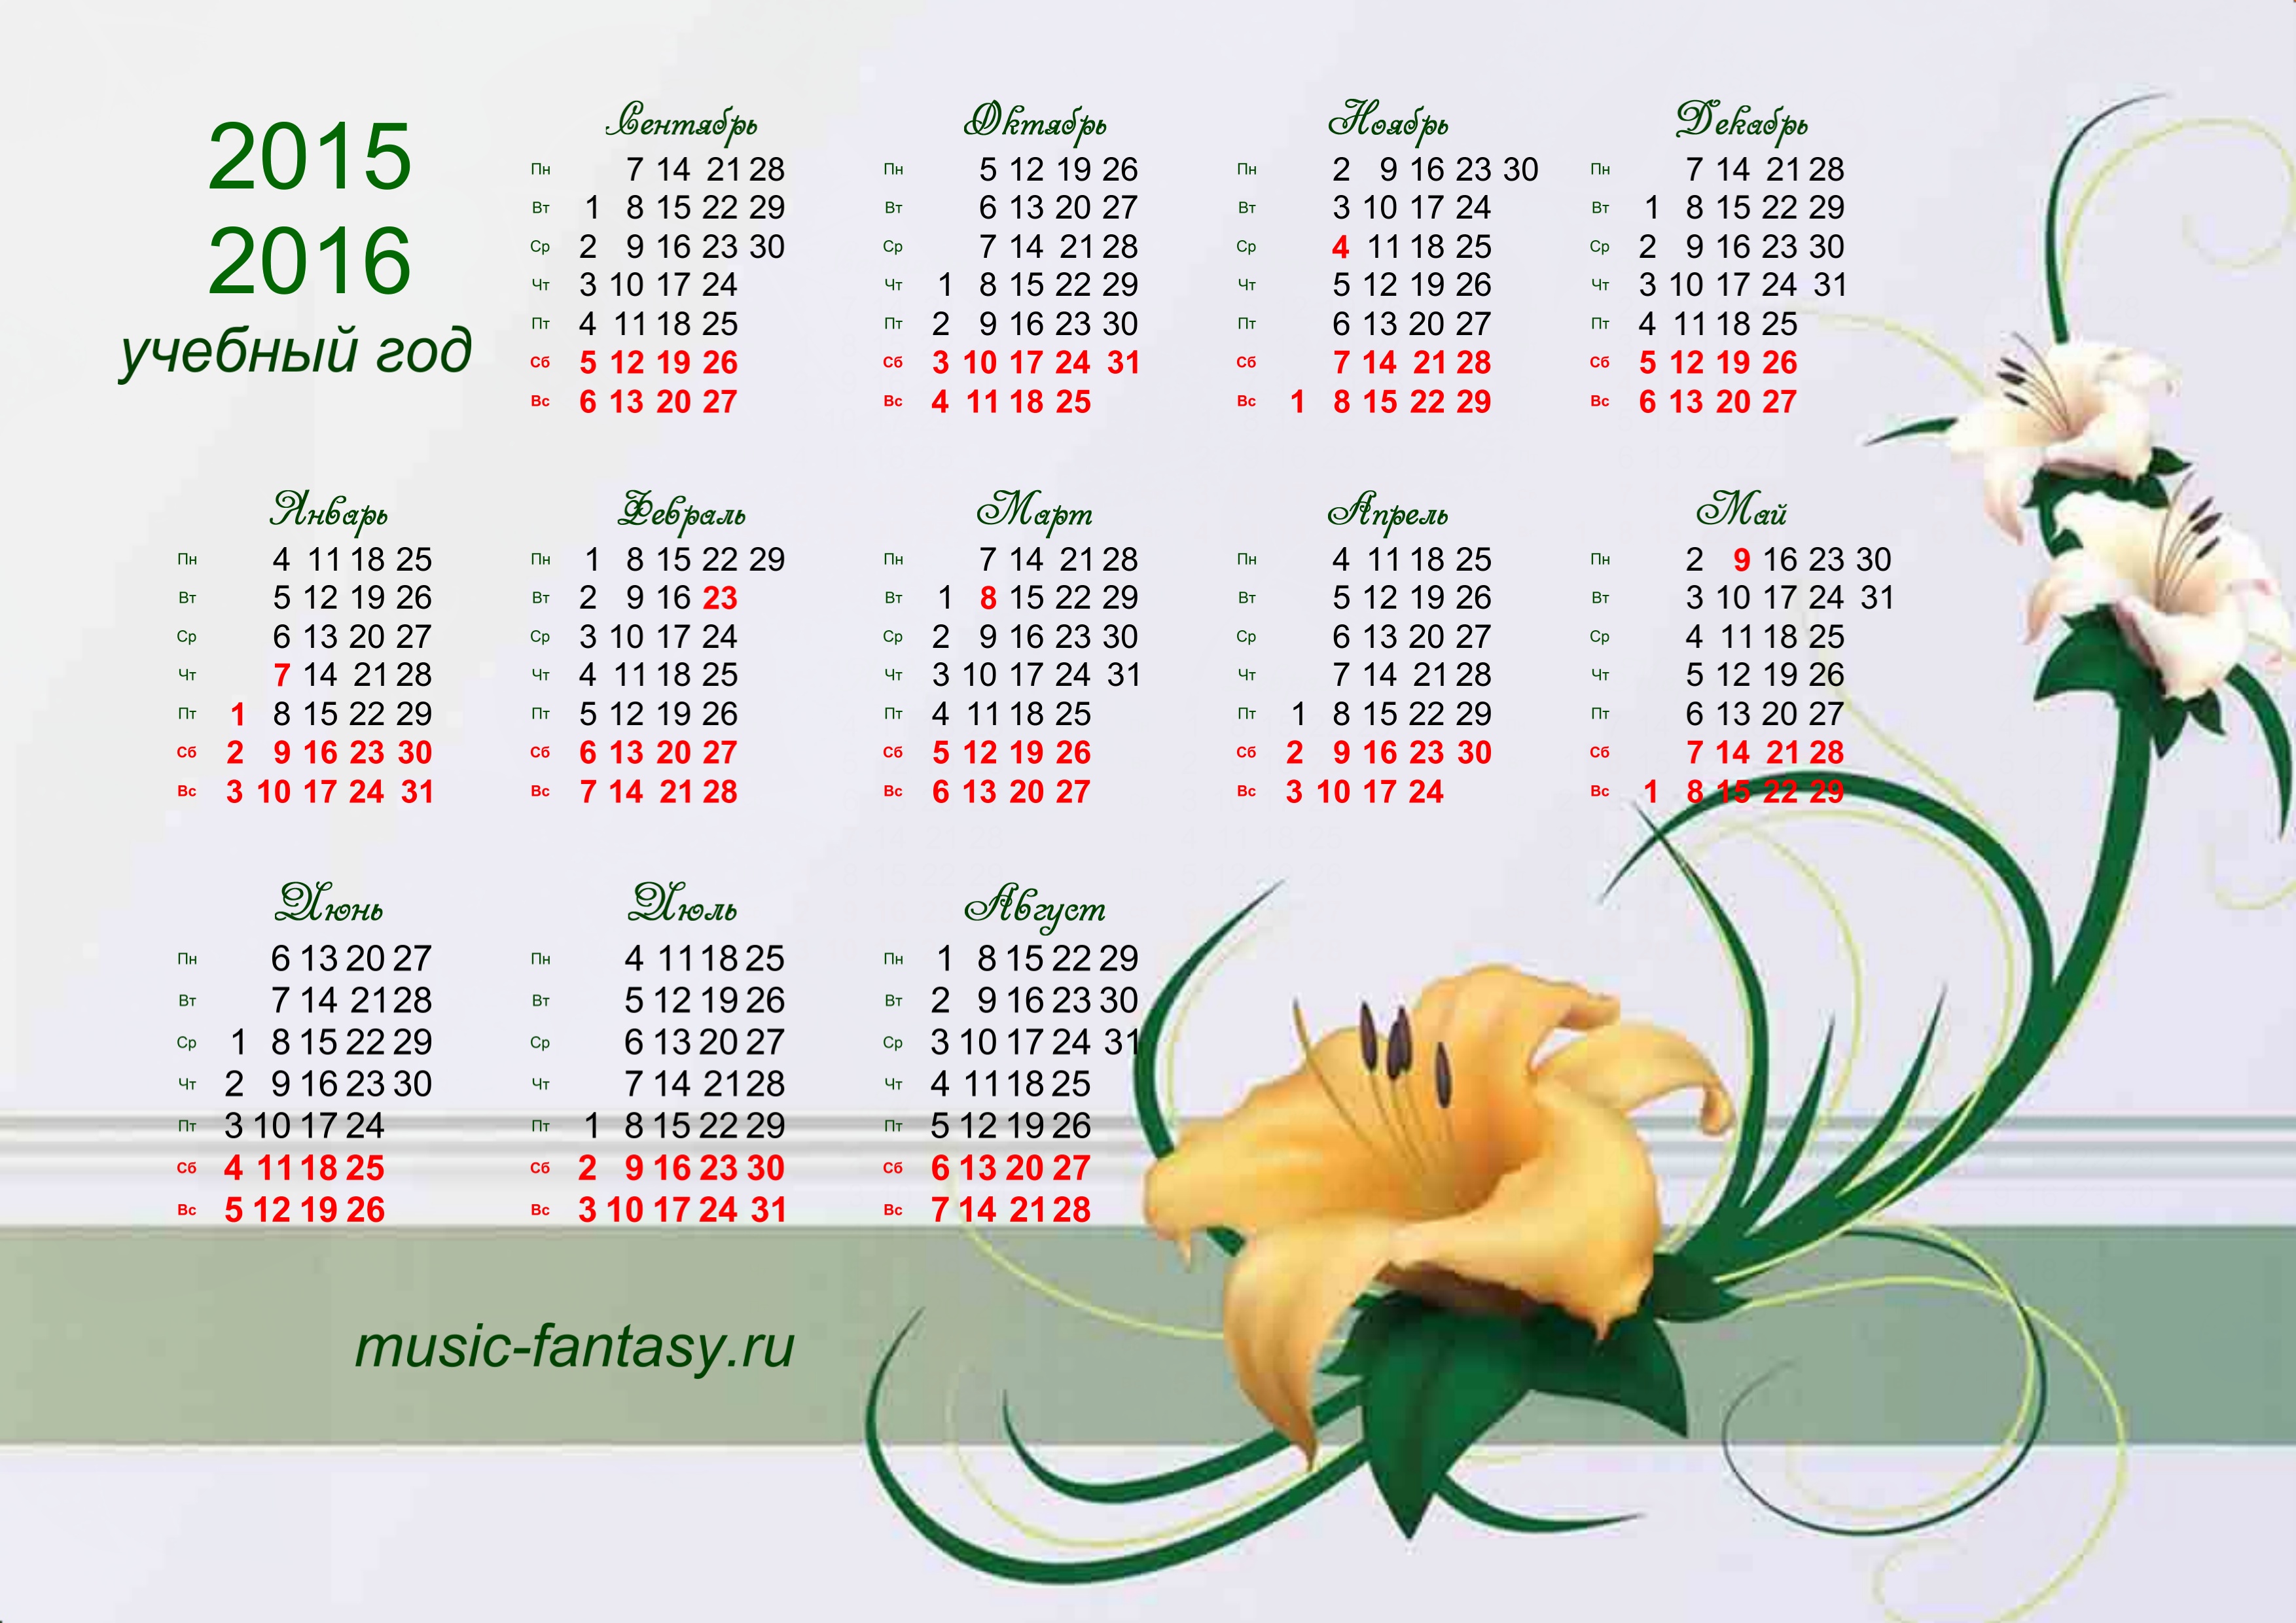 учебный календарь на 2015-2016 учебный год скачать